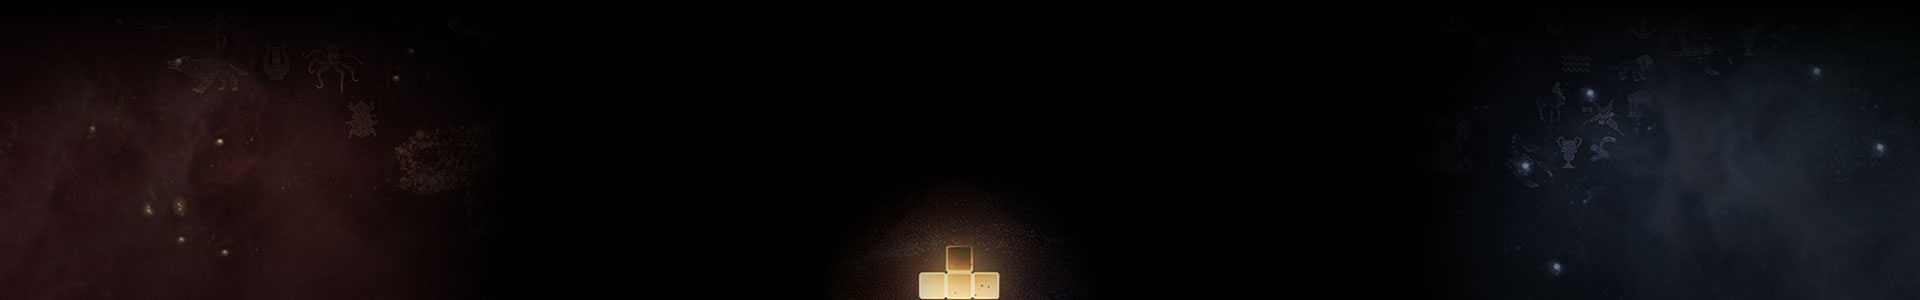 빛나는 Tetris 조각이 별들 사이에 자리하고 있습니다.